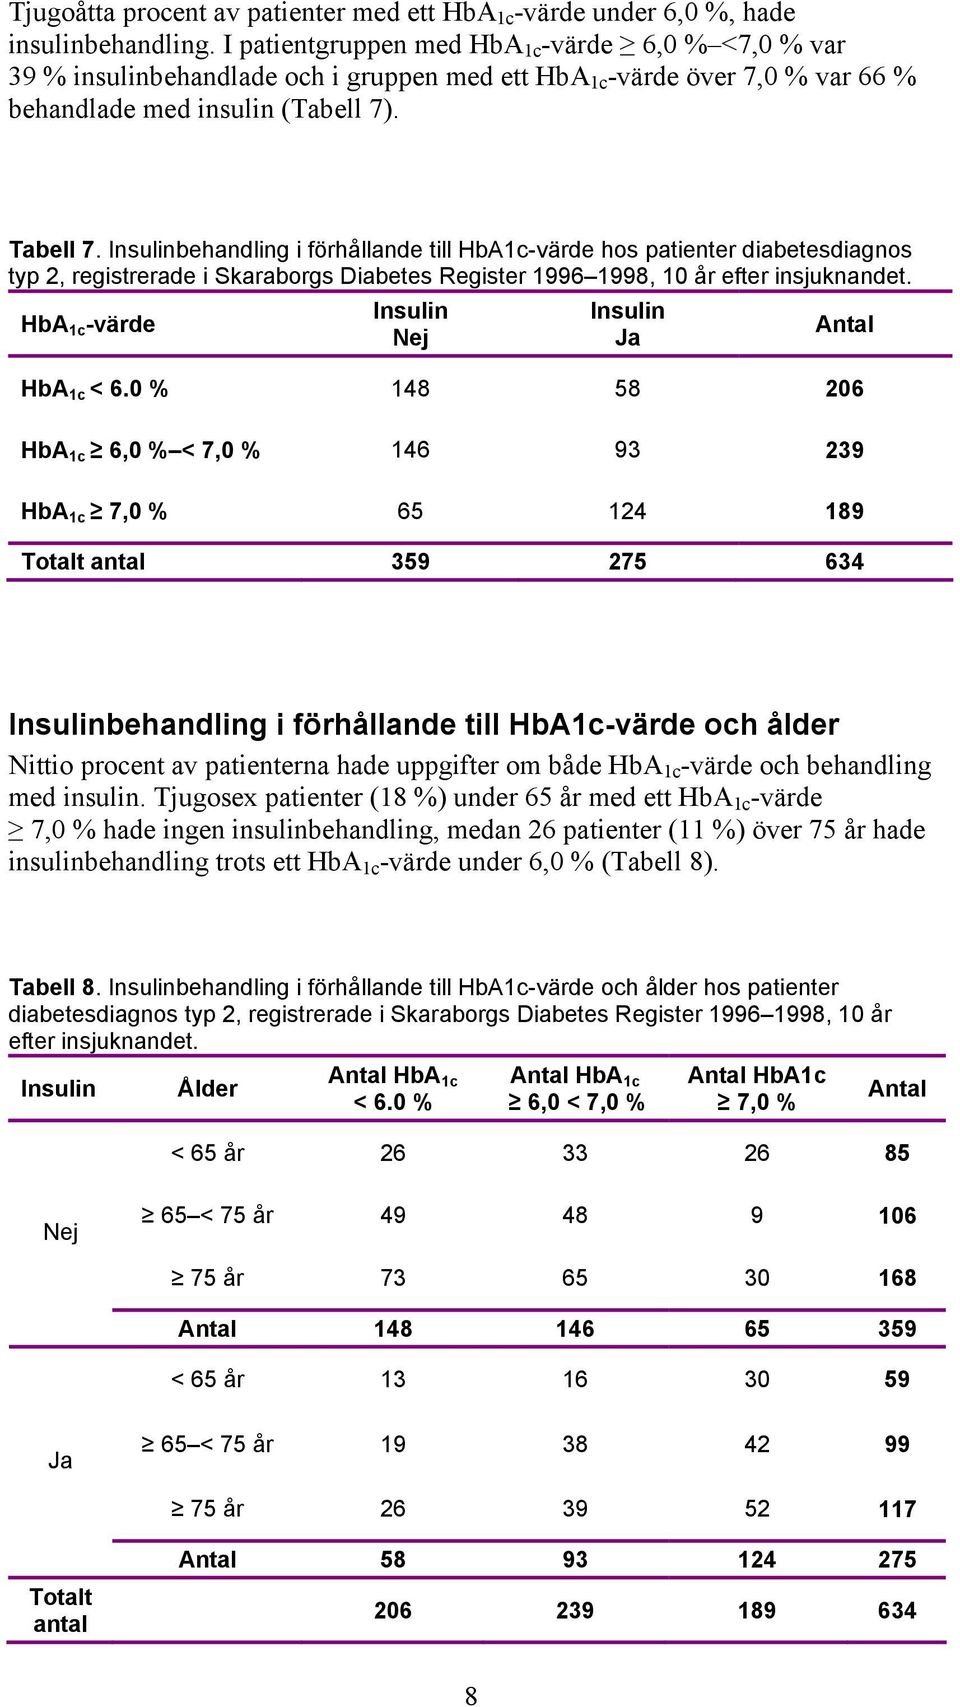 Insulinbehandling i förhållande till HbA1c-värde hos patienter diabetesdiagnos typ 2, registrerade i Skaraborgs Diabetes Register 1996 1998, 10 år efter insjuknandet.